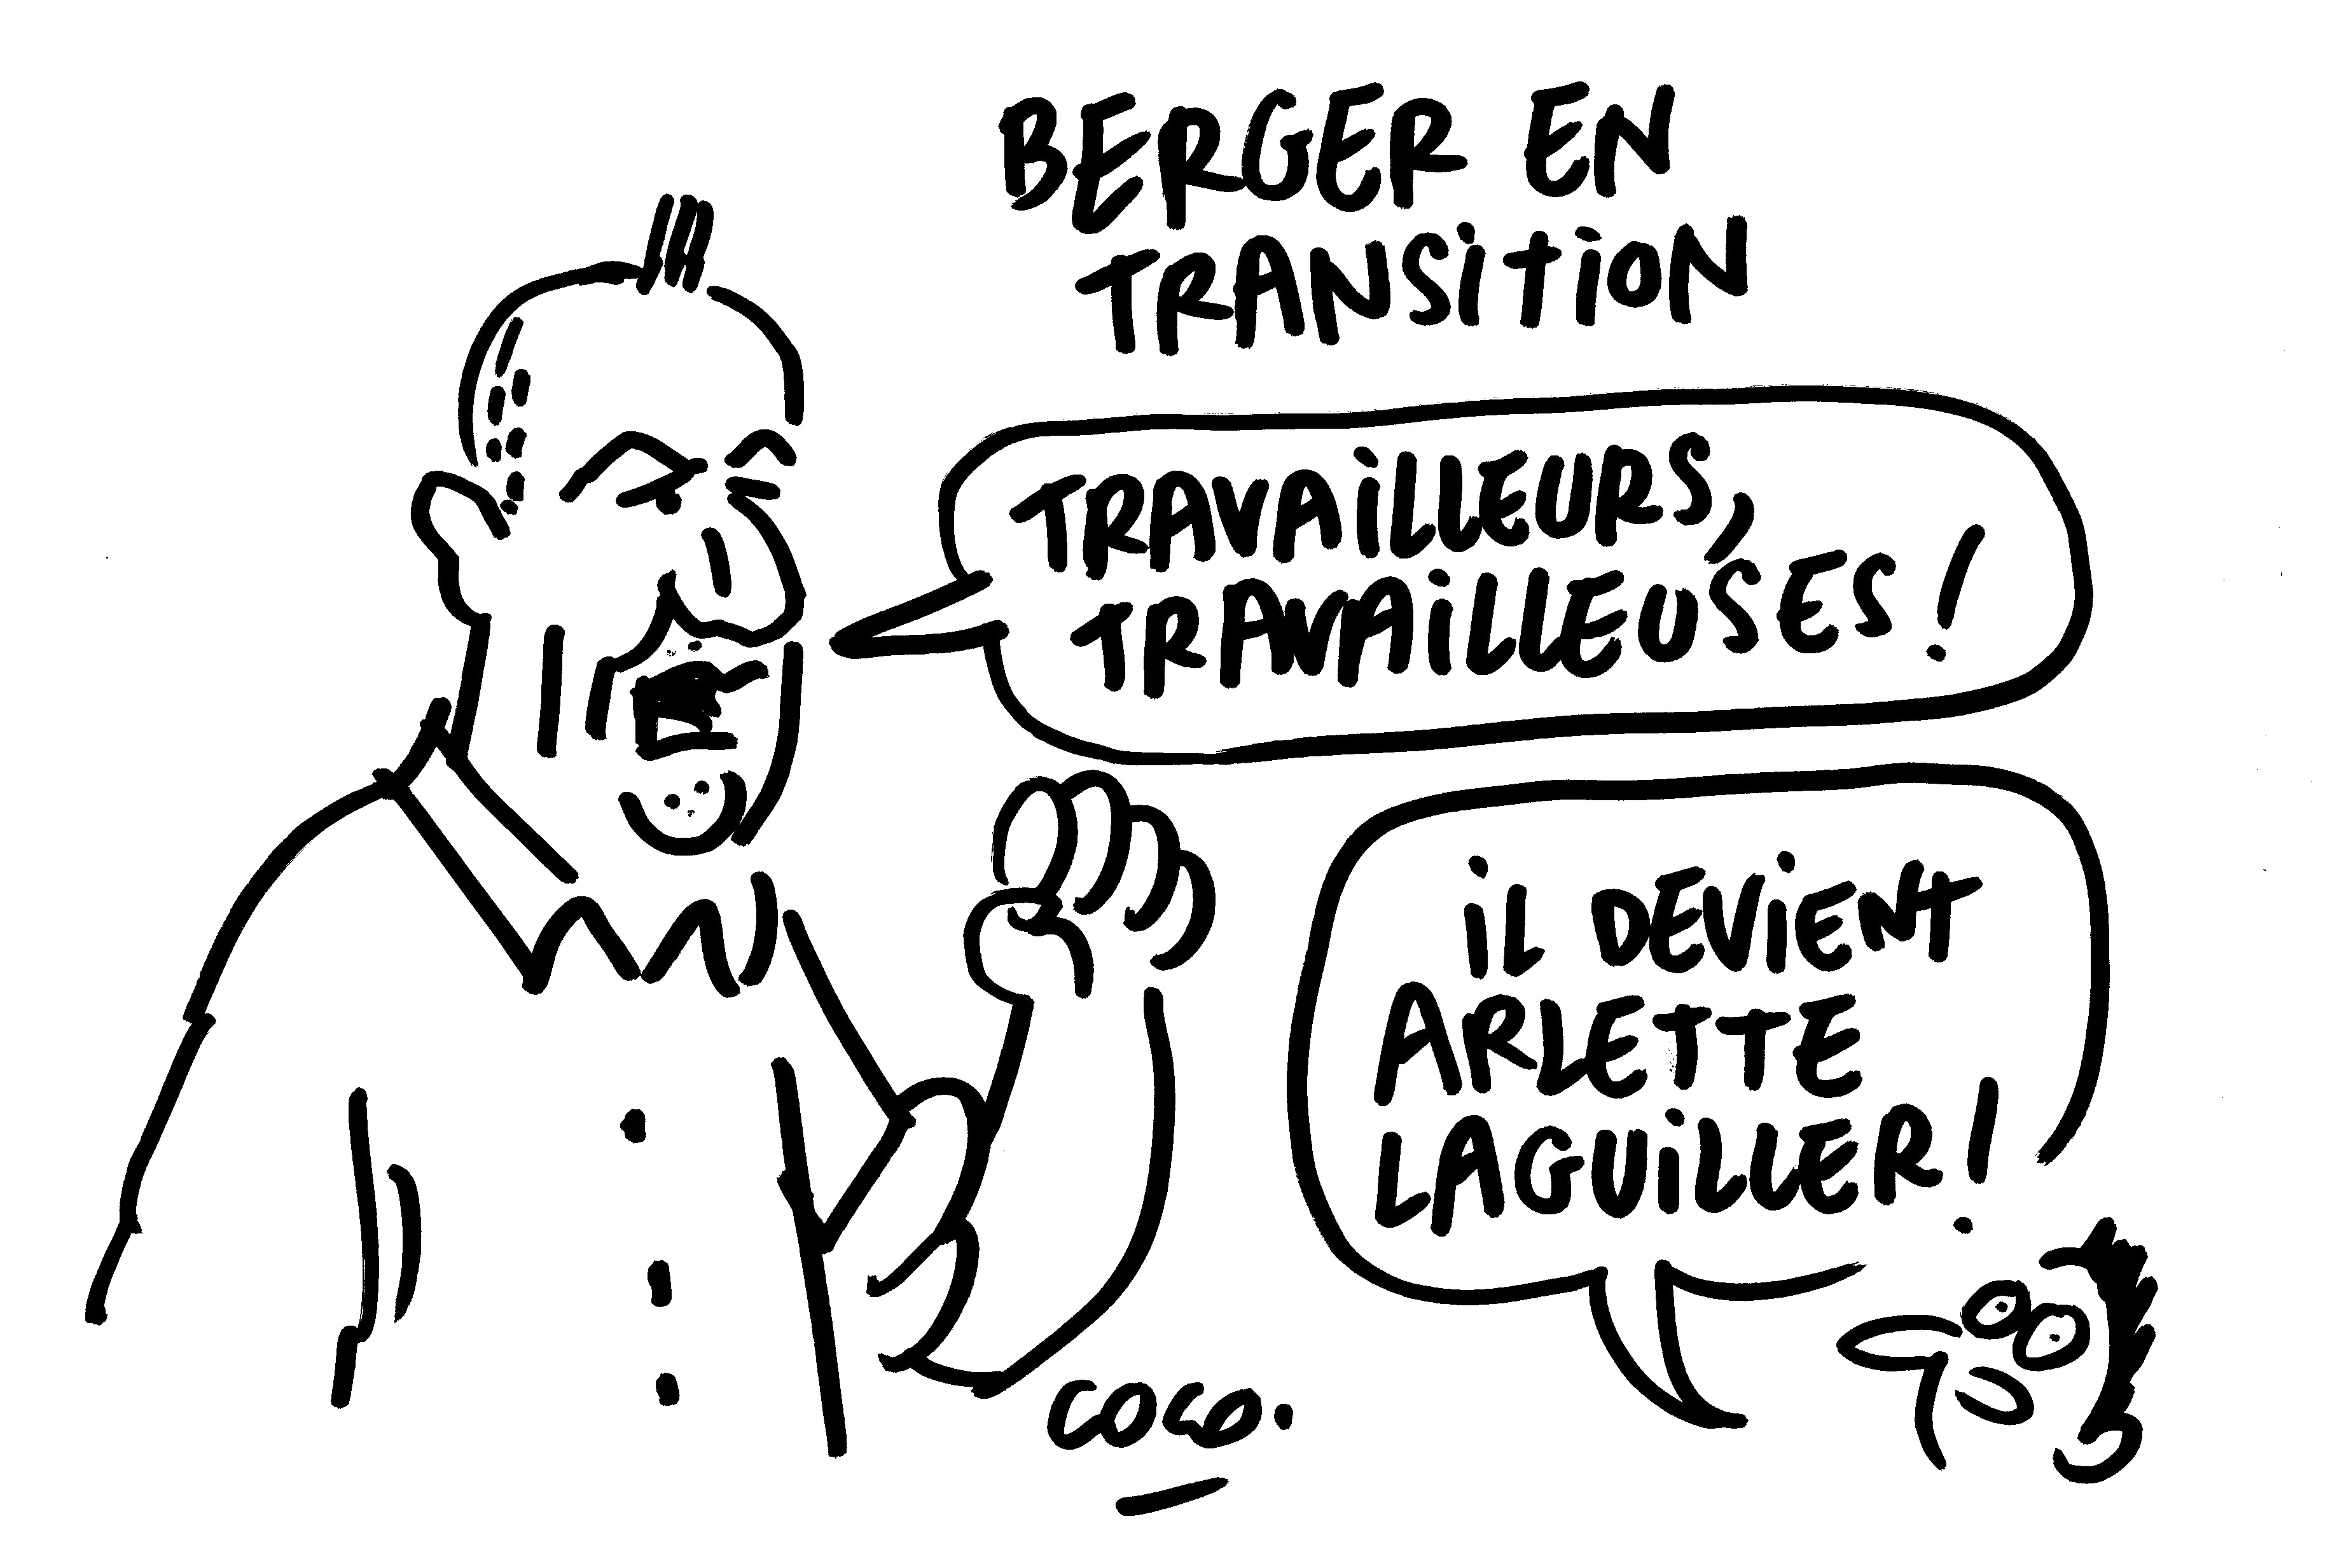 L'humour noir de Pierre Kroll croque l'urgence environnementale – Libération